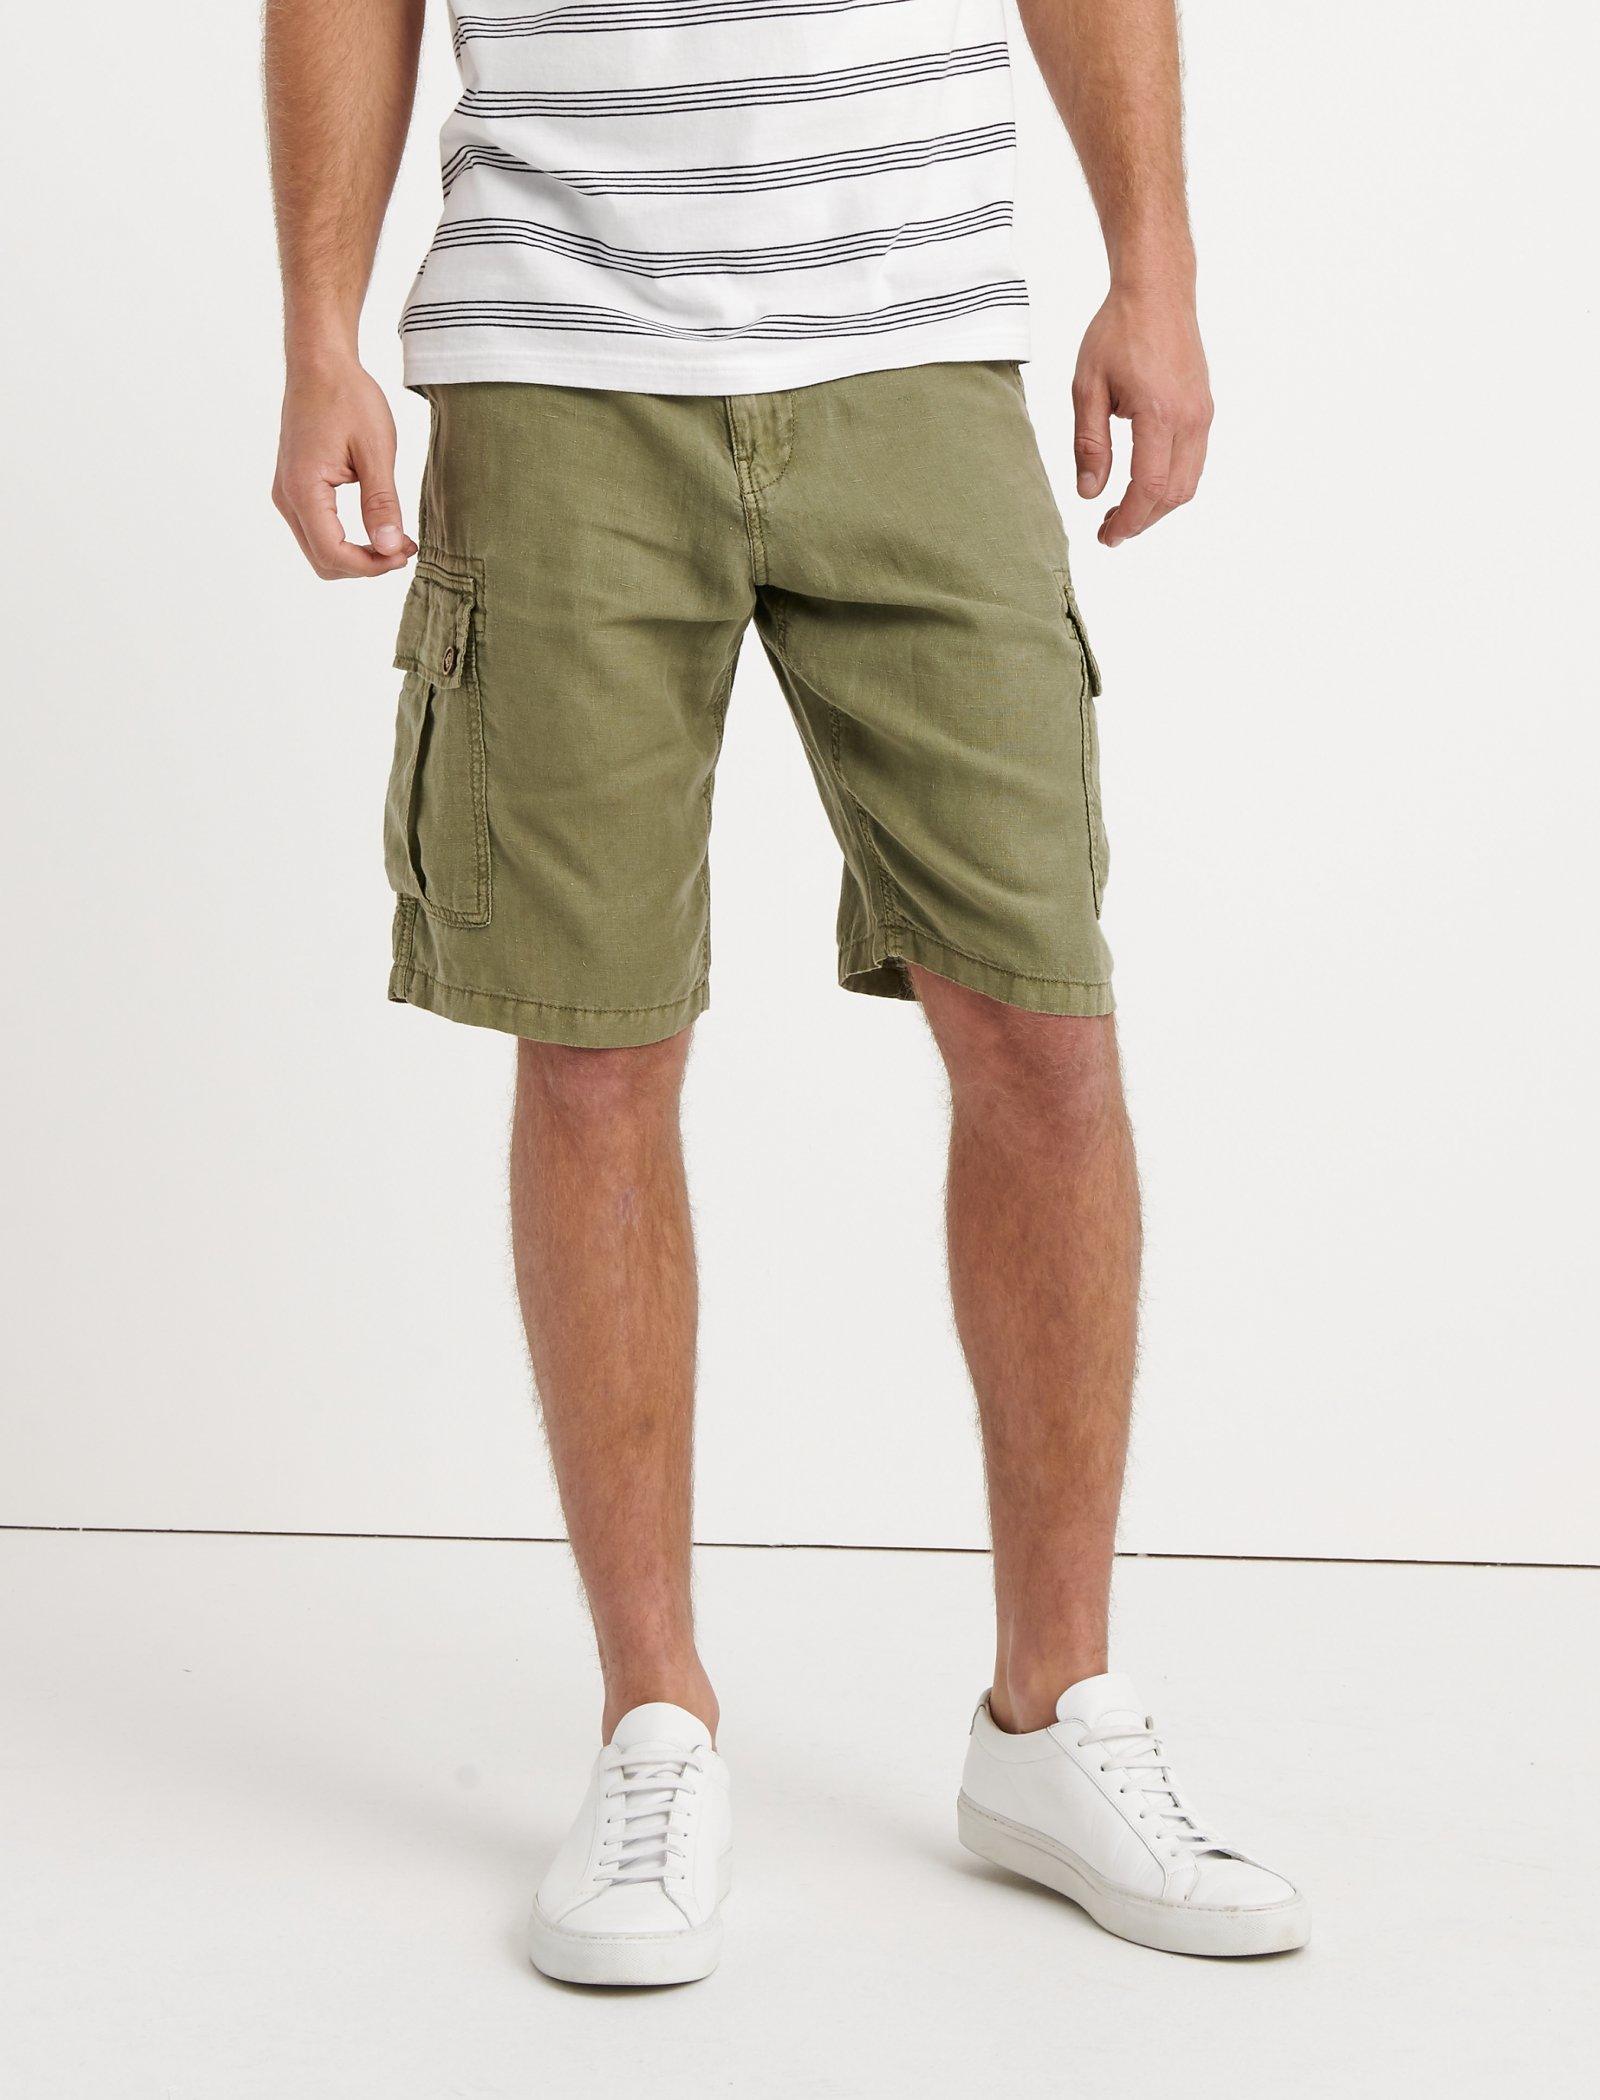 lucky brand laguna shorts